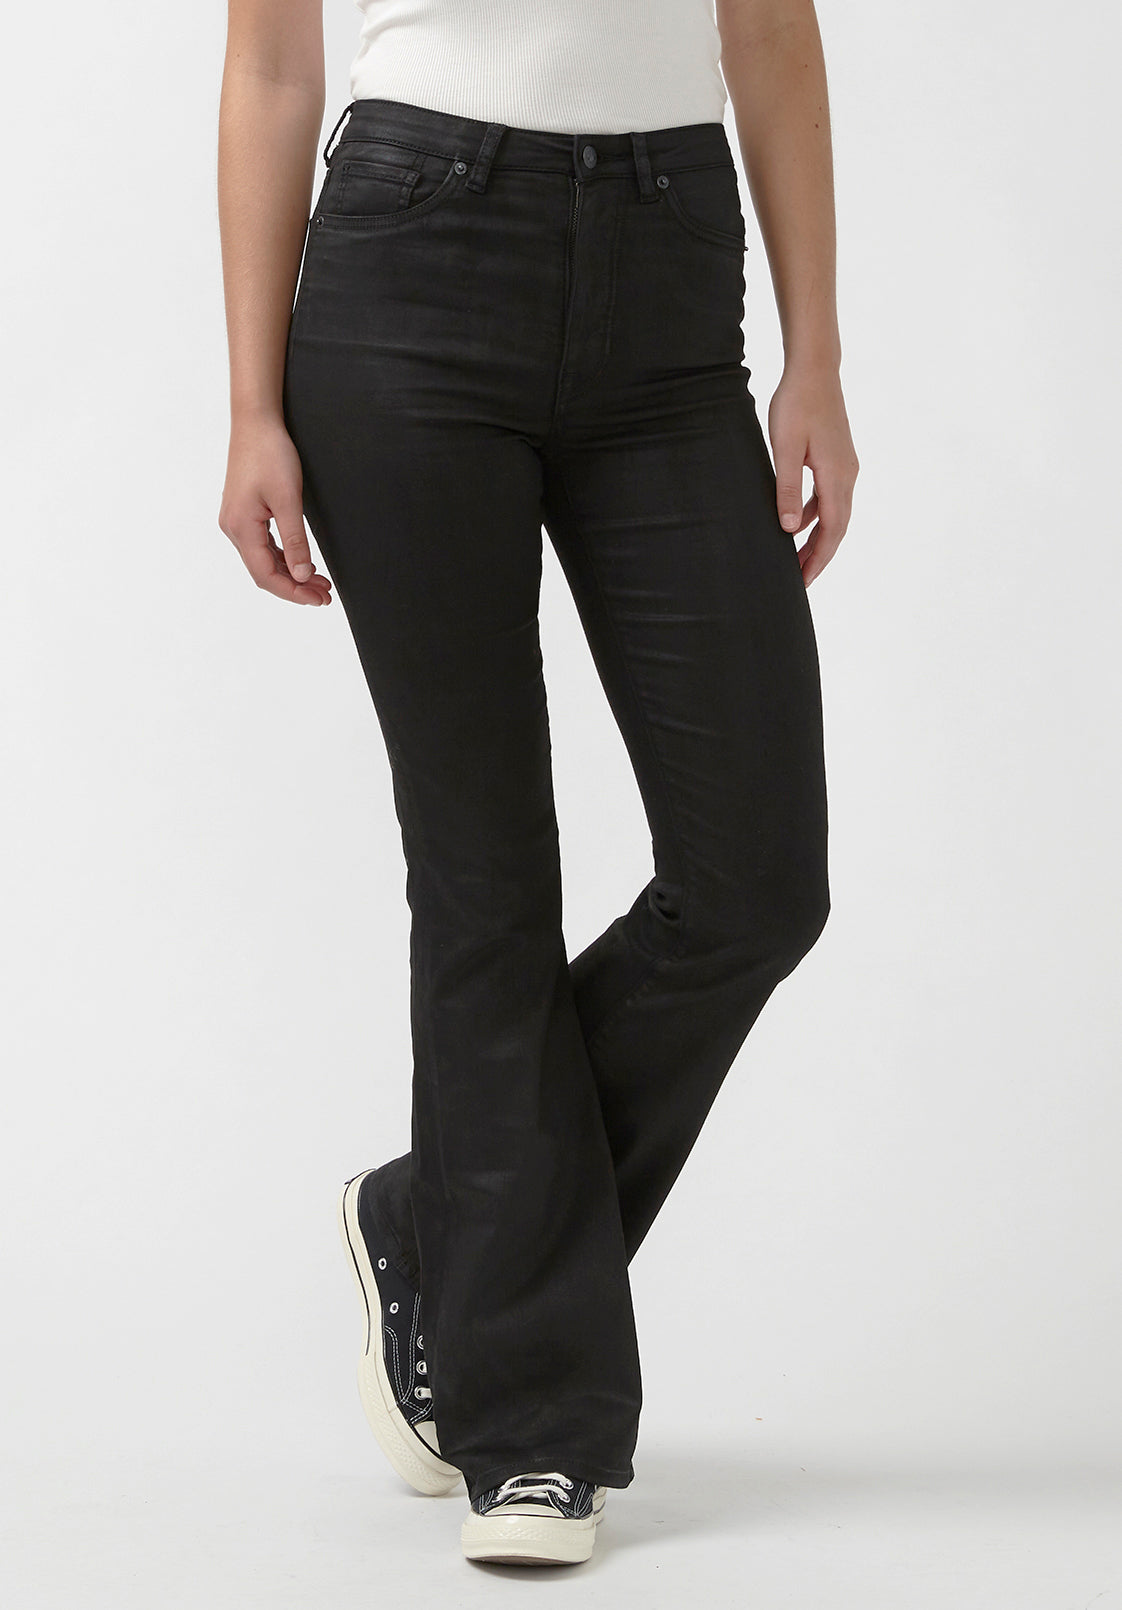 A.L.C. Women's Stretch Cotton Flare Pants - Black - Size 10